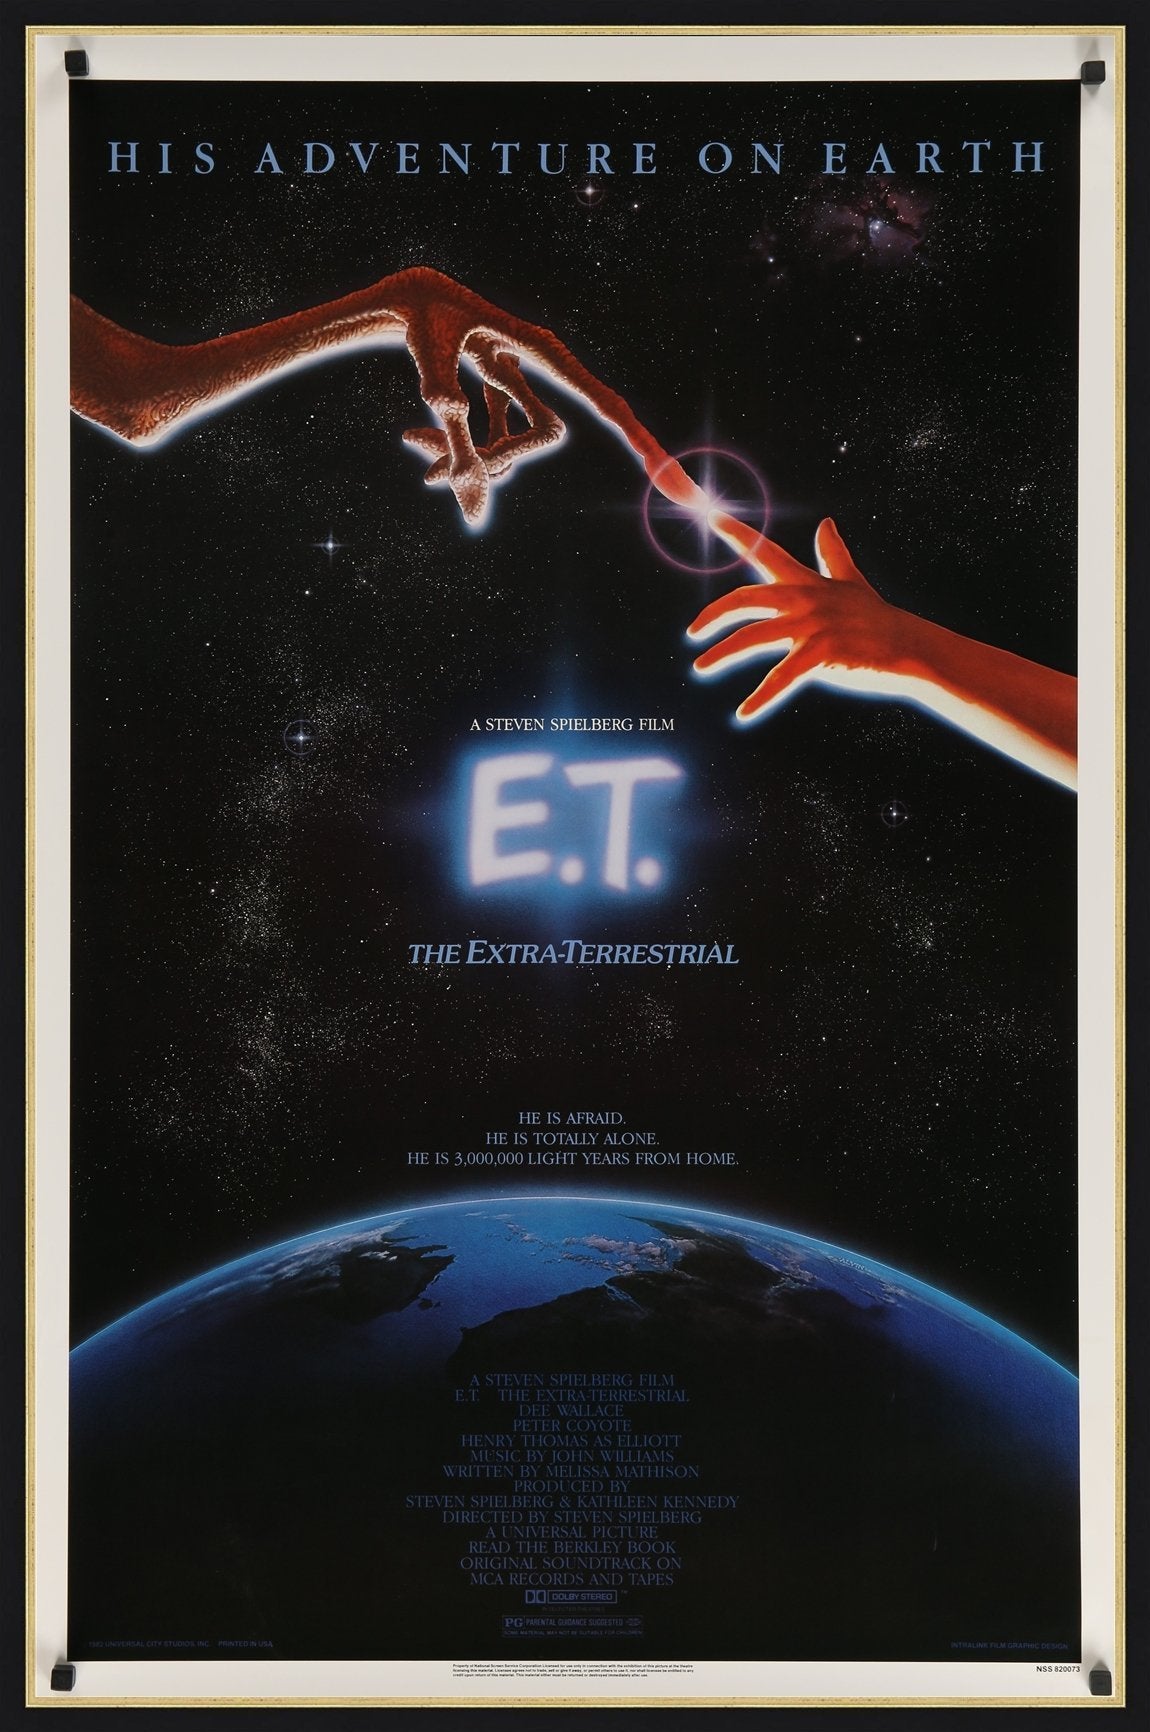 An original movie poster for the film E.T.